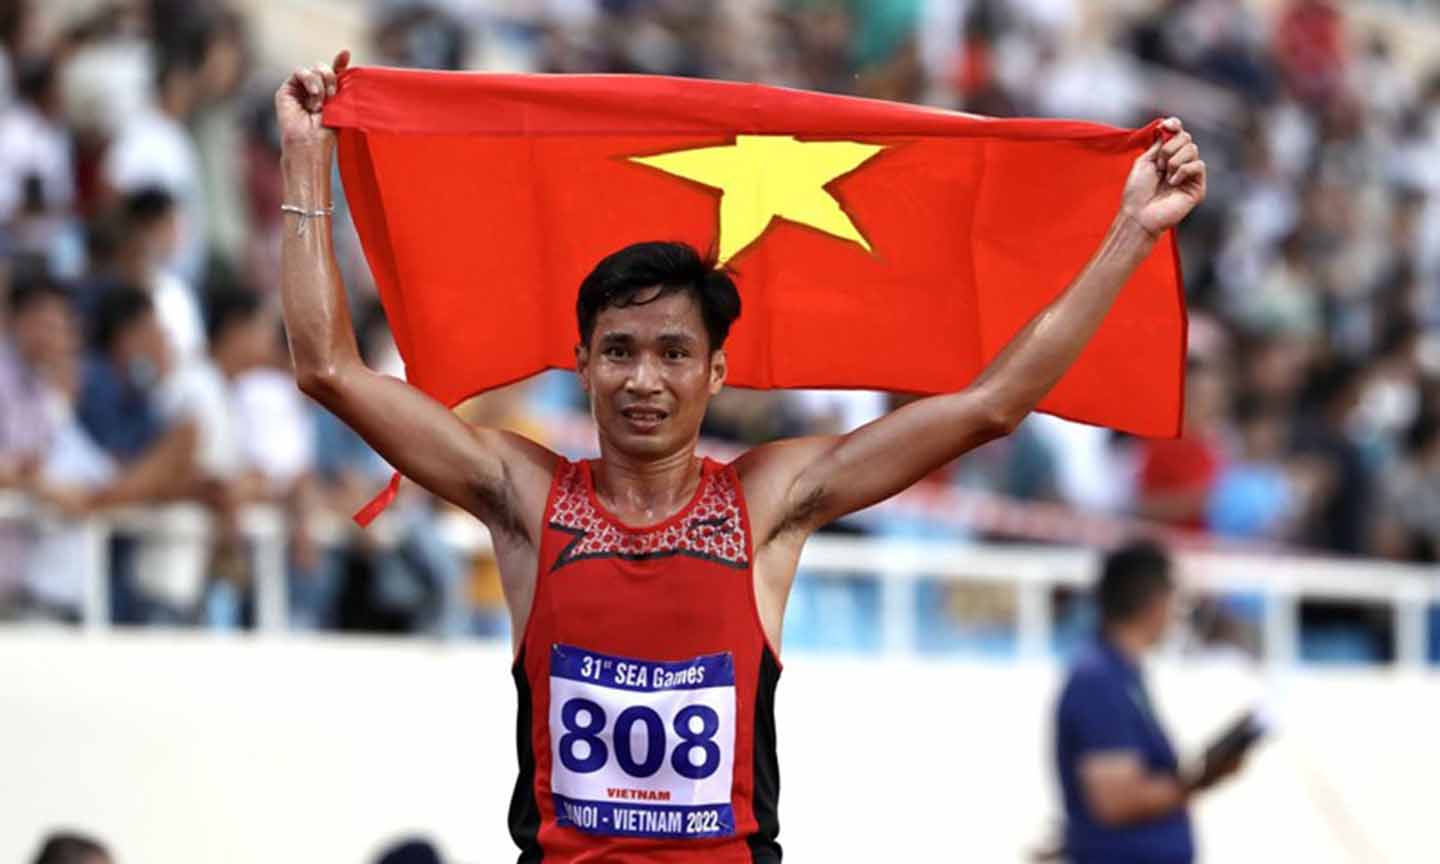 VĐV Nguyễn Văn Lai đoạt HCV ở nội dung 10.000 m.